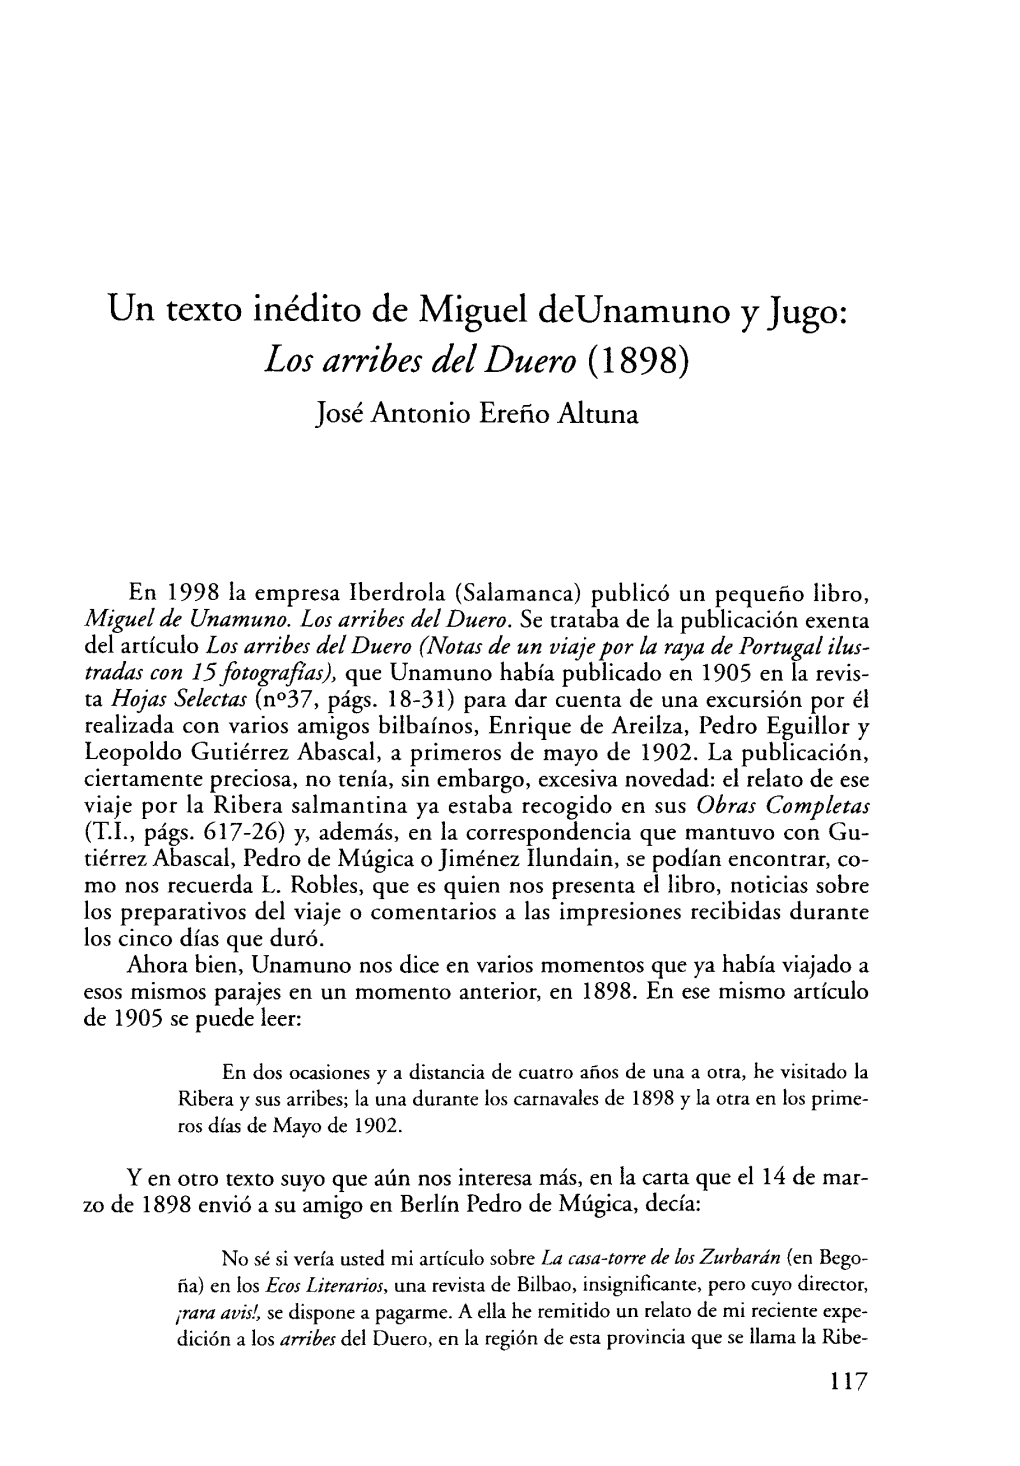 Un Texto Inédito De Miguel Deunamuno Y Jugo: Los Arribes Del Duero (1898) José Antonio Ereño Altuna